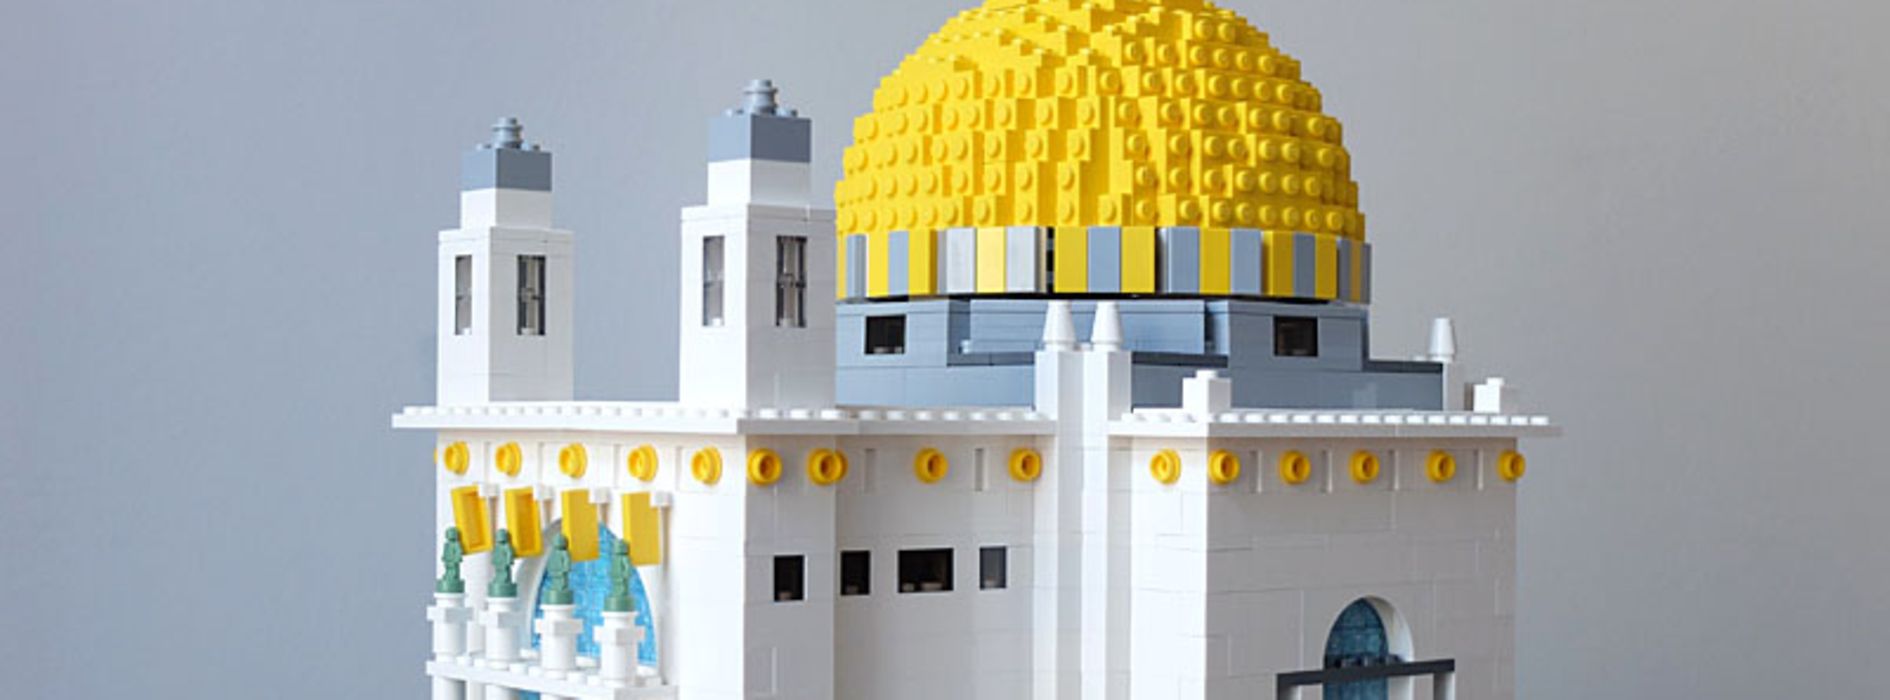 Kirche am Steinhof aus Lego